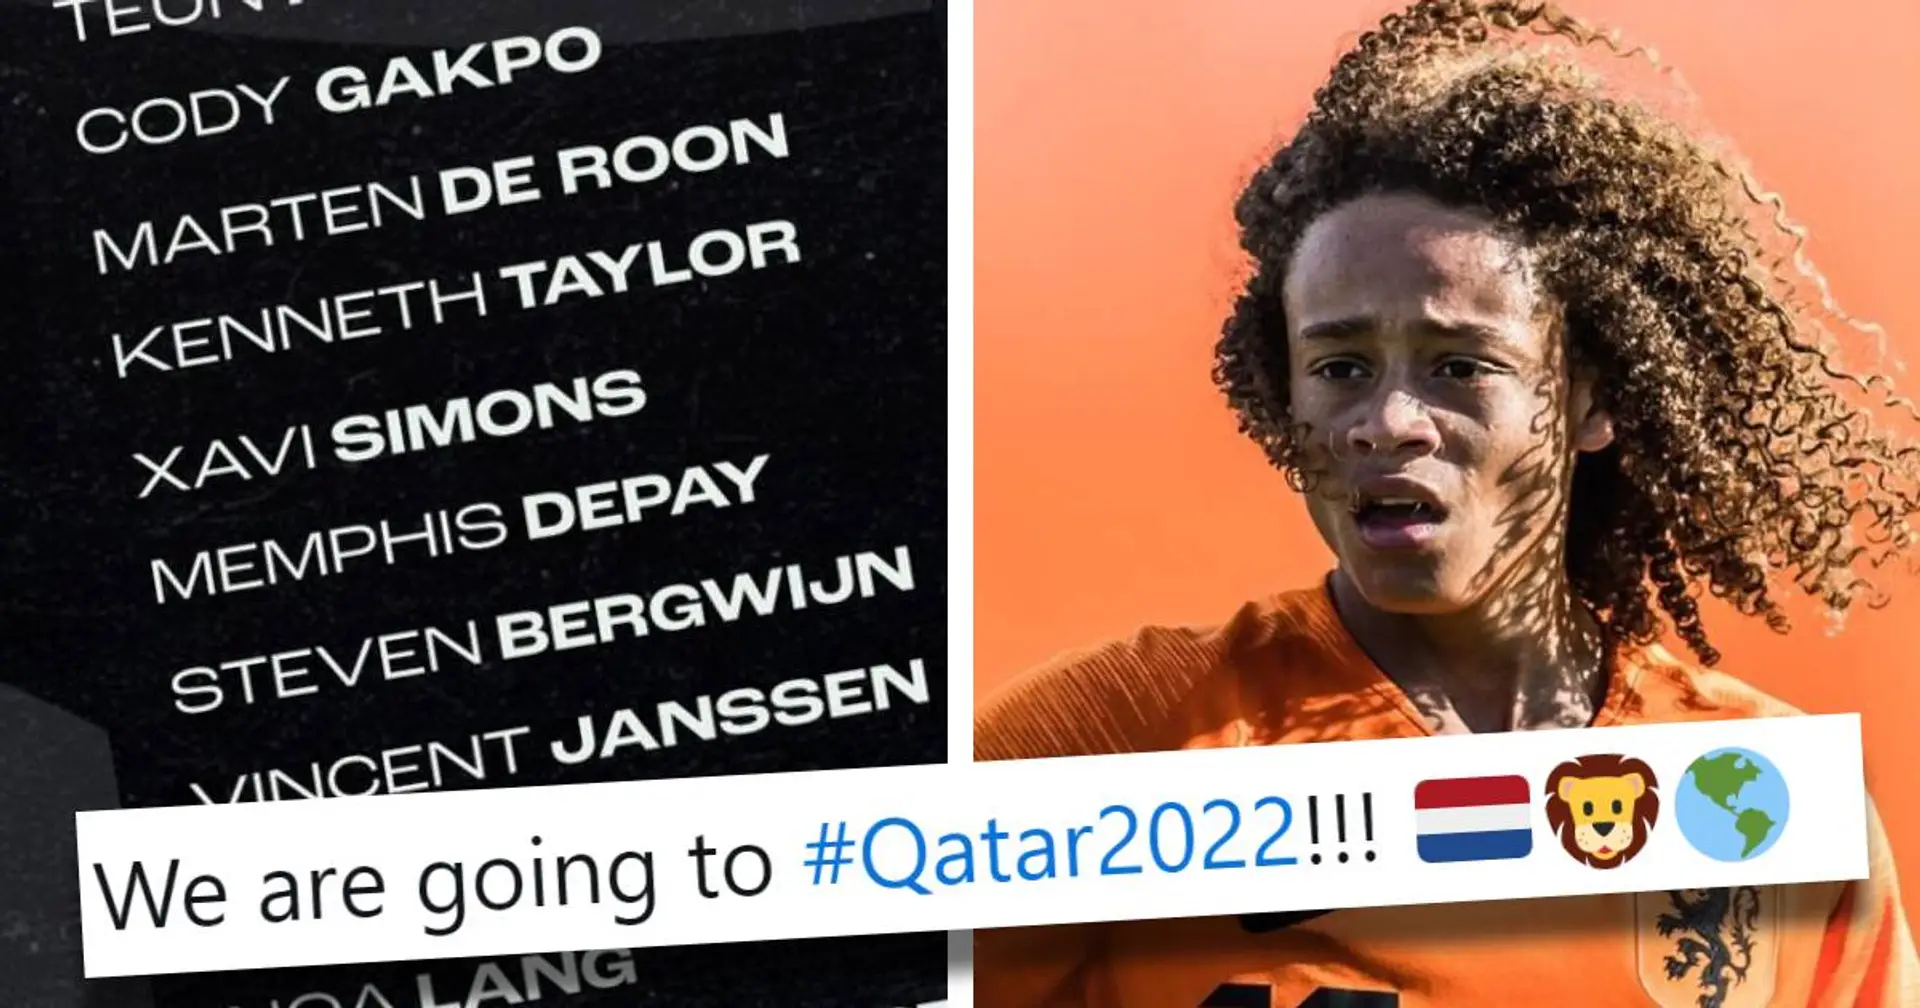 "Un rêve devenu réalité" : Xavi Simons à la Coupe du monde au Qatar avec les Pays bas, pourquoi c'est dingue? Réponse